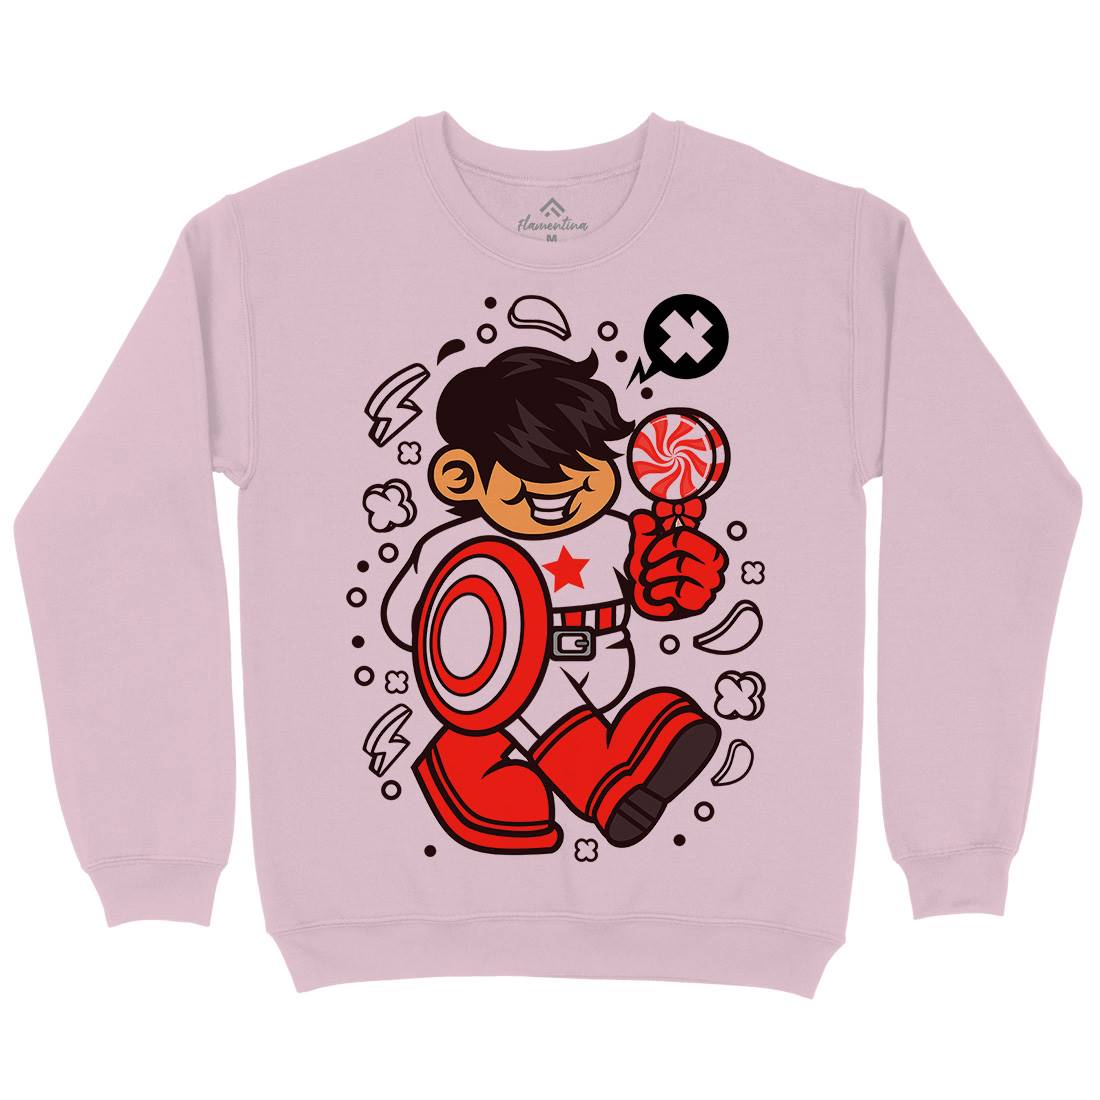 Superhero American Kid Kids Crew Neck Sweatshirt Geek C263